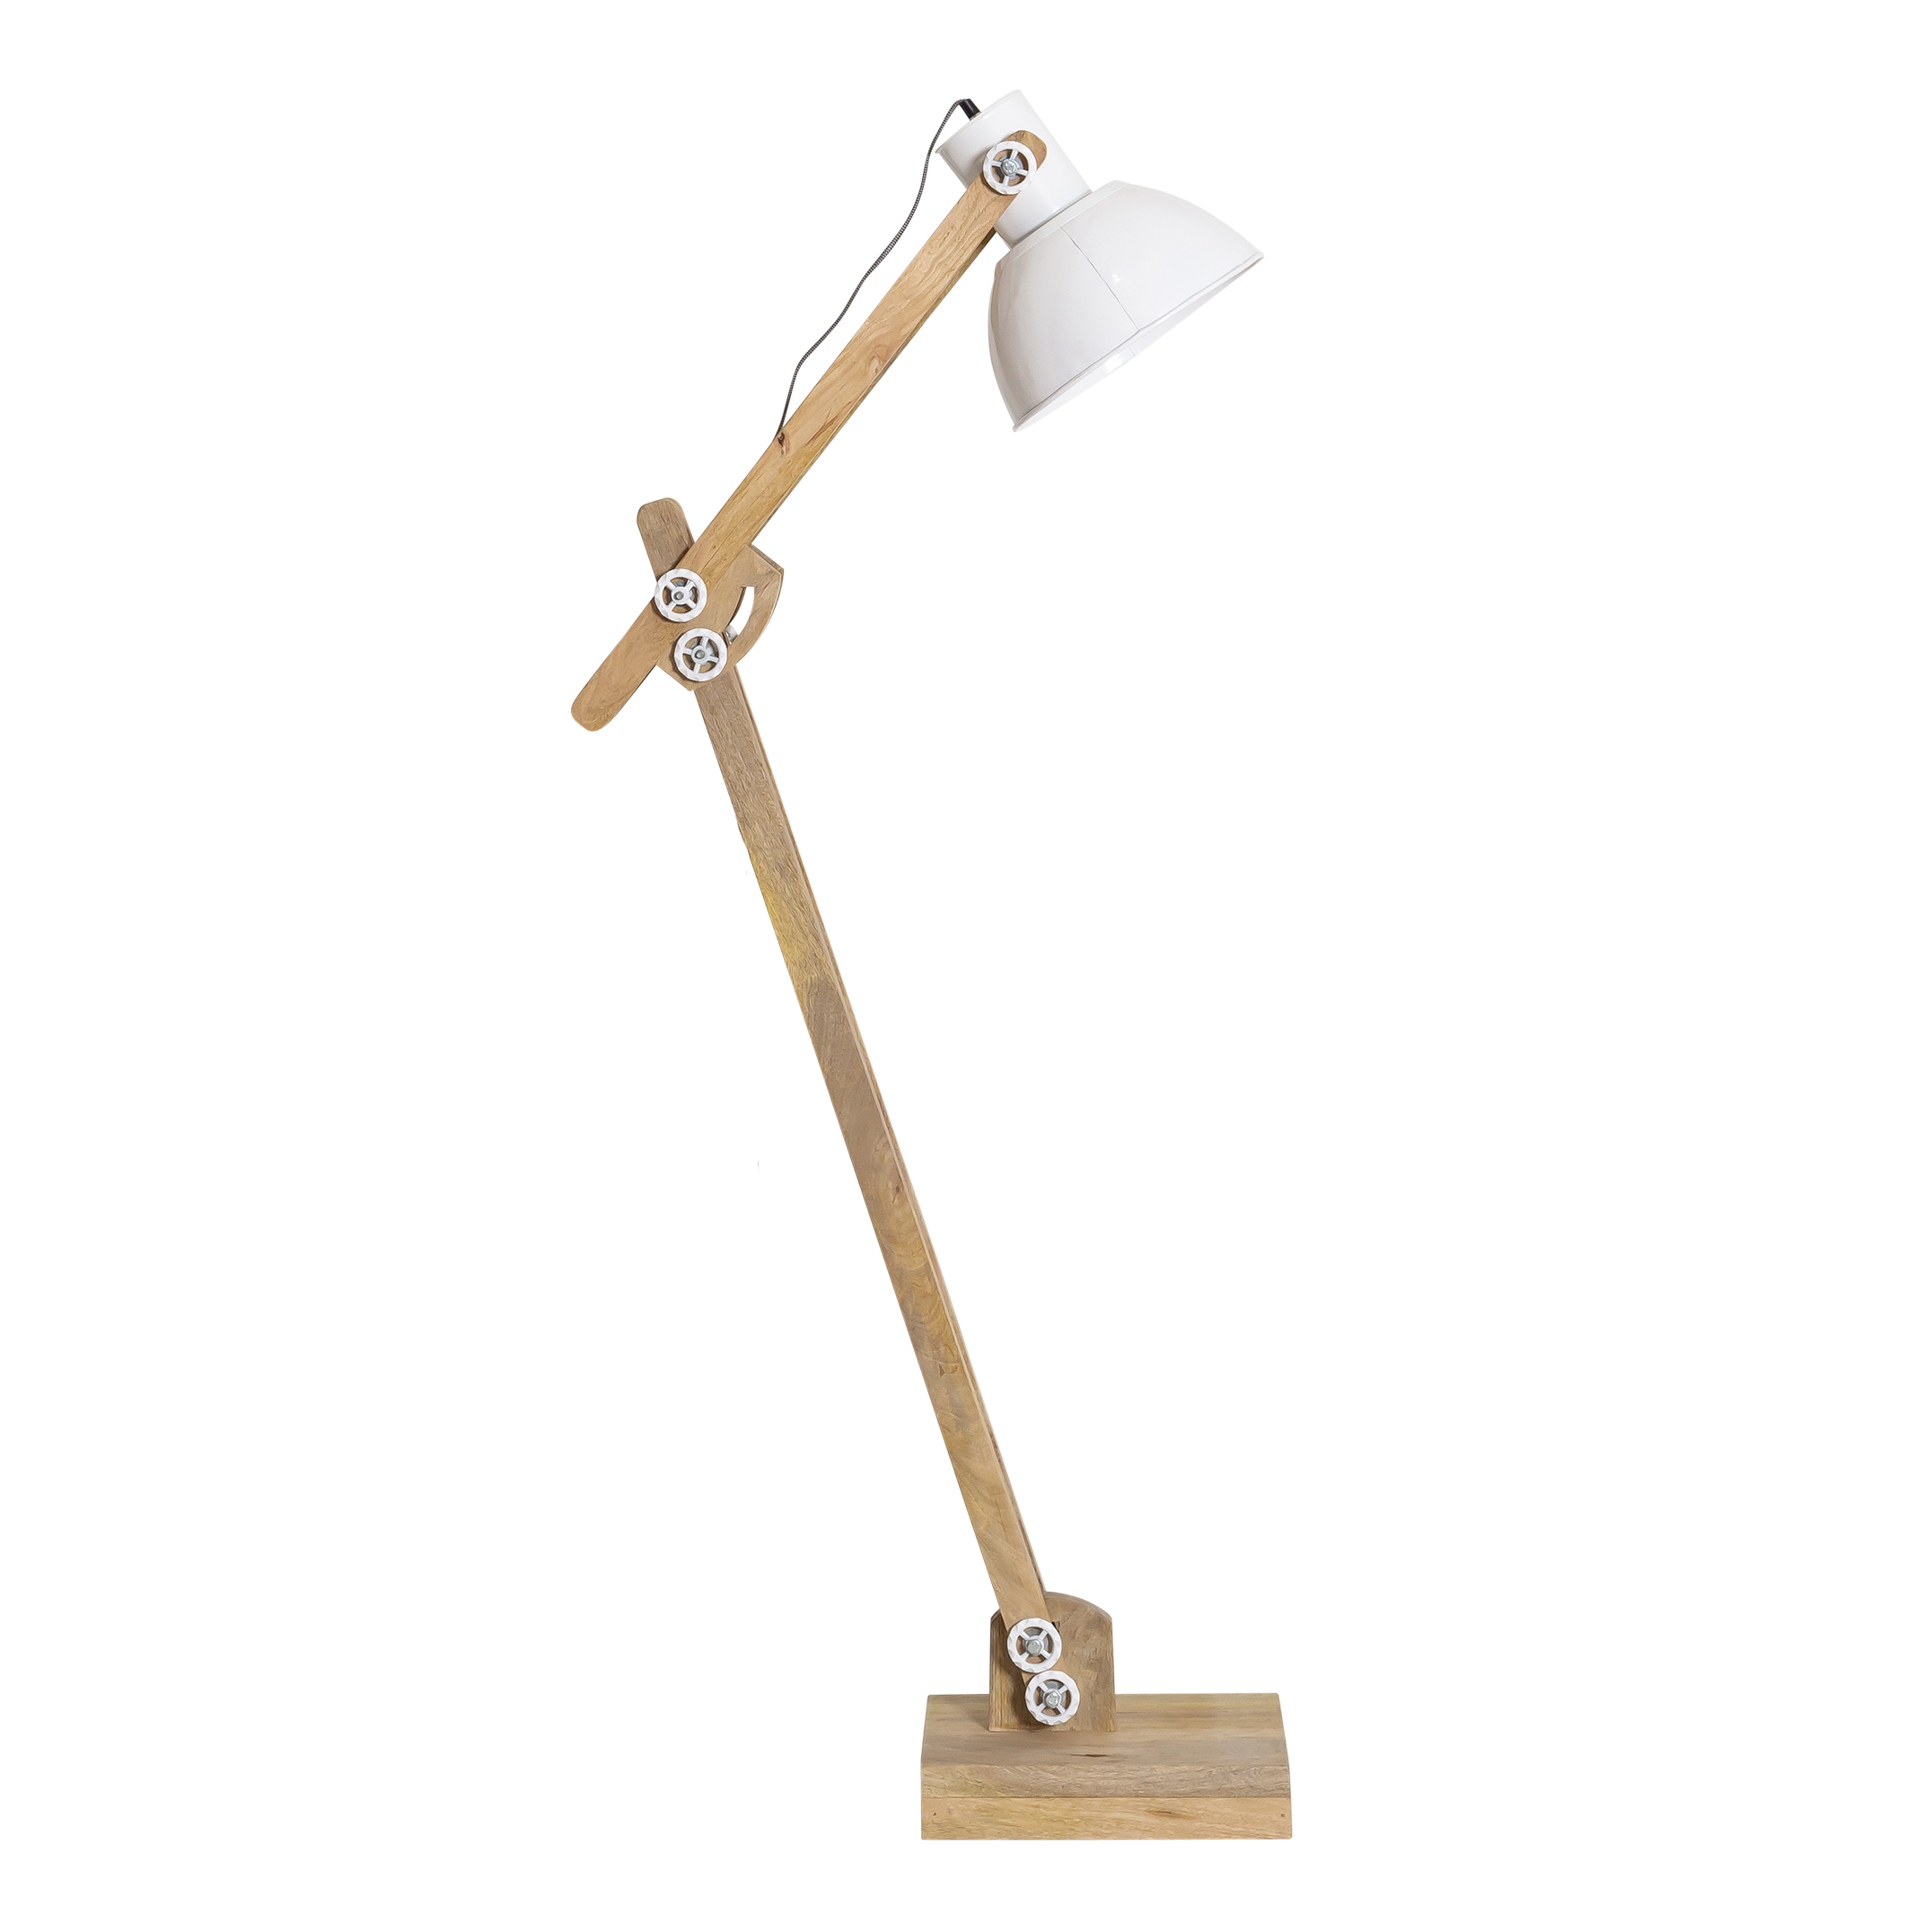 Lampe sur pied design MOEROL XL en acier chromé (grande et blanche) -  Lampes sur pied